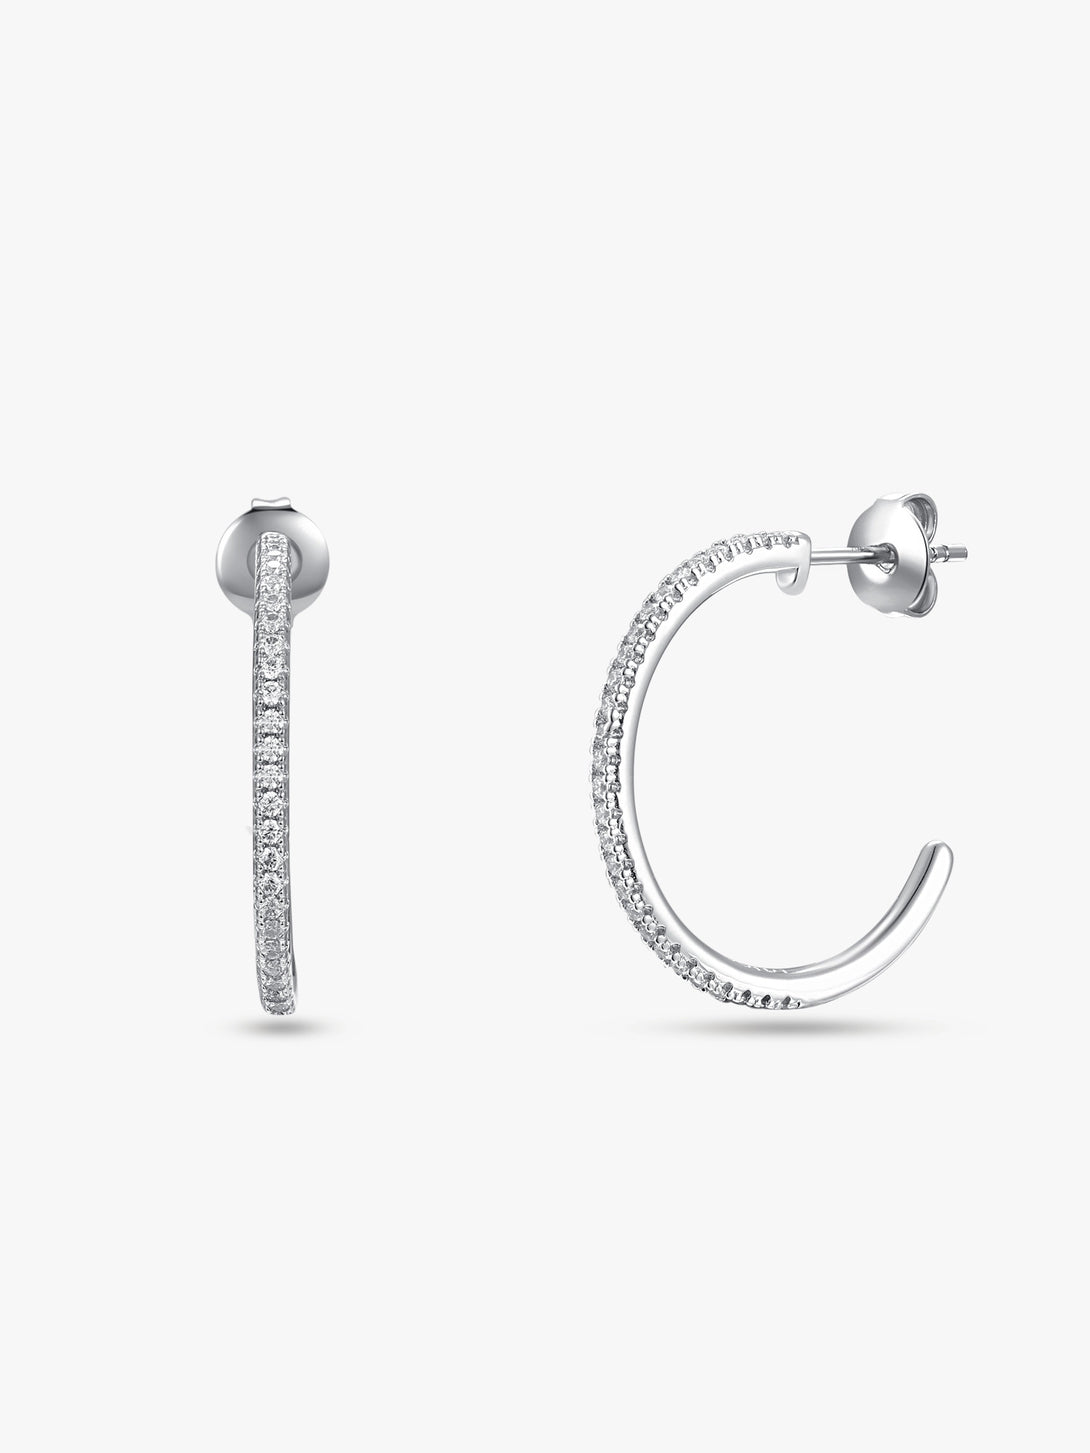 Delicate Semicircle Hoop Earrings - OOTDY